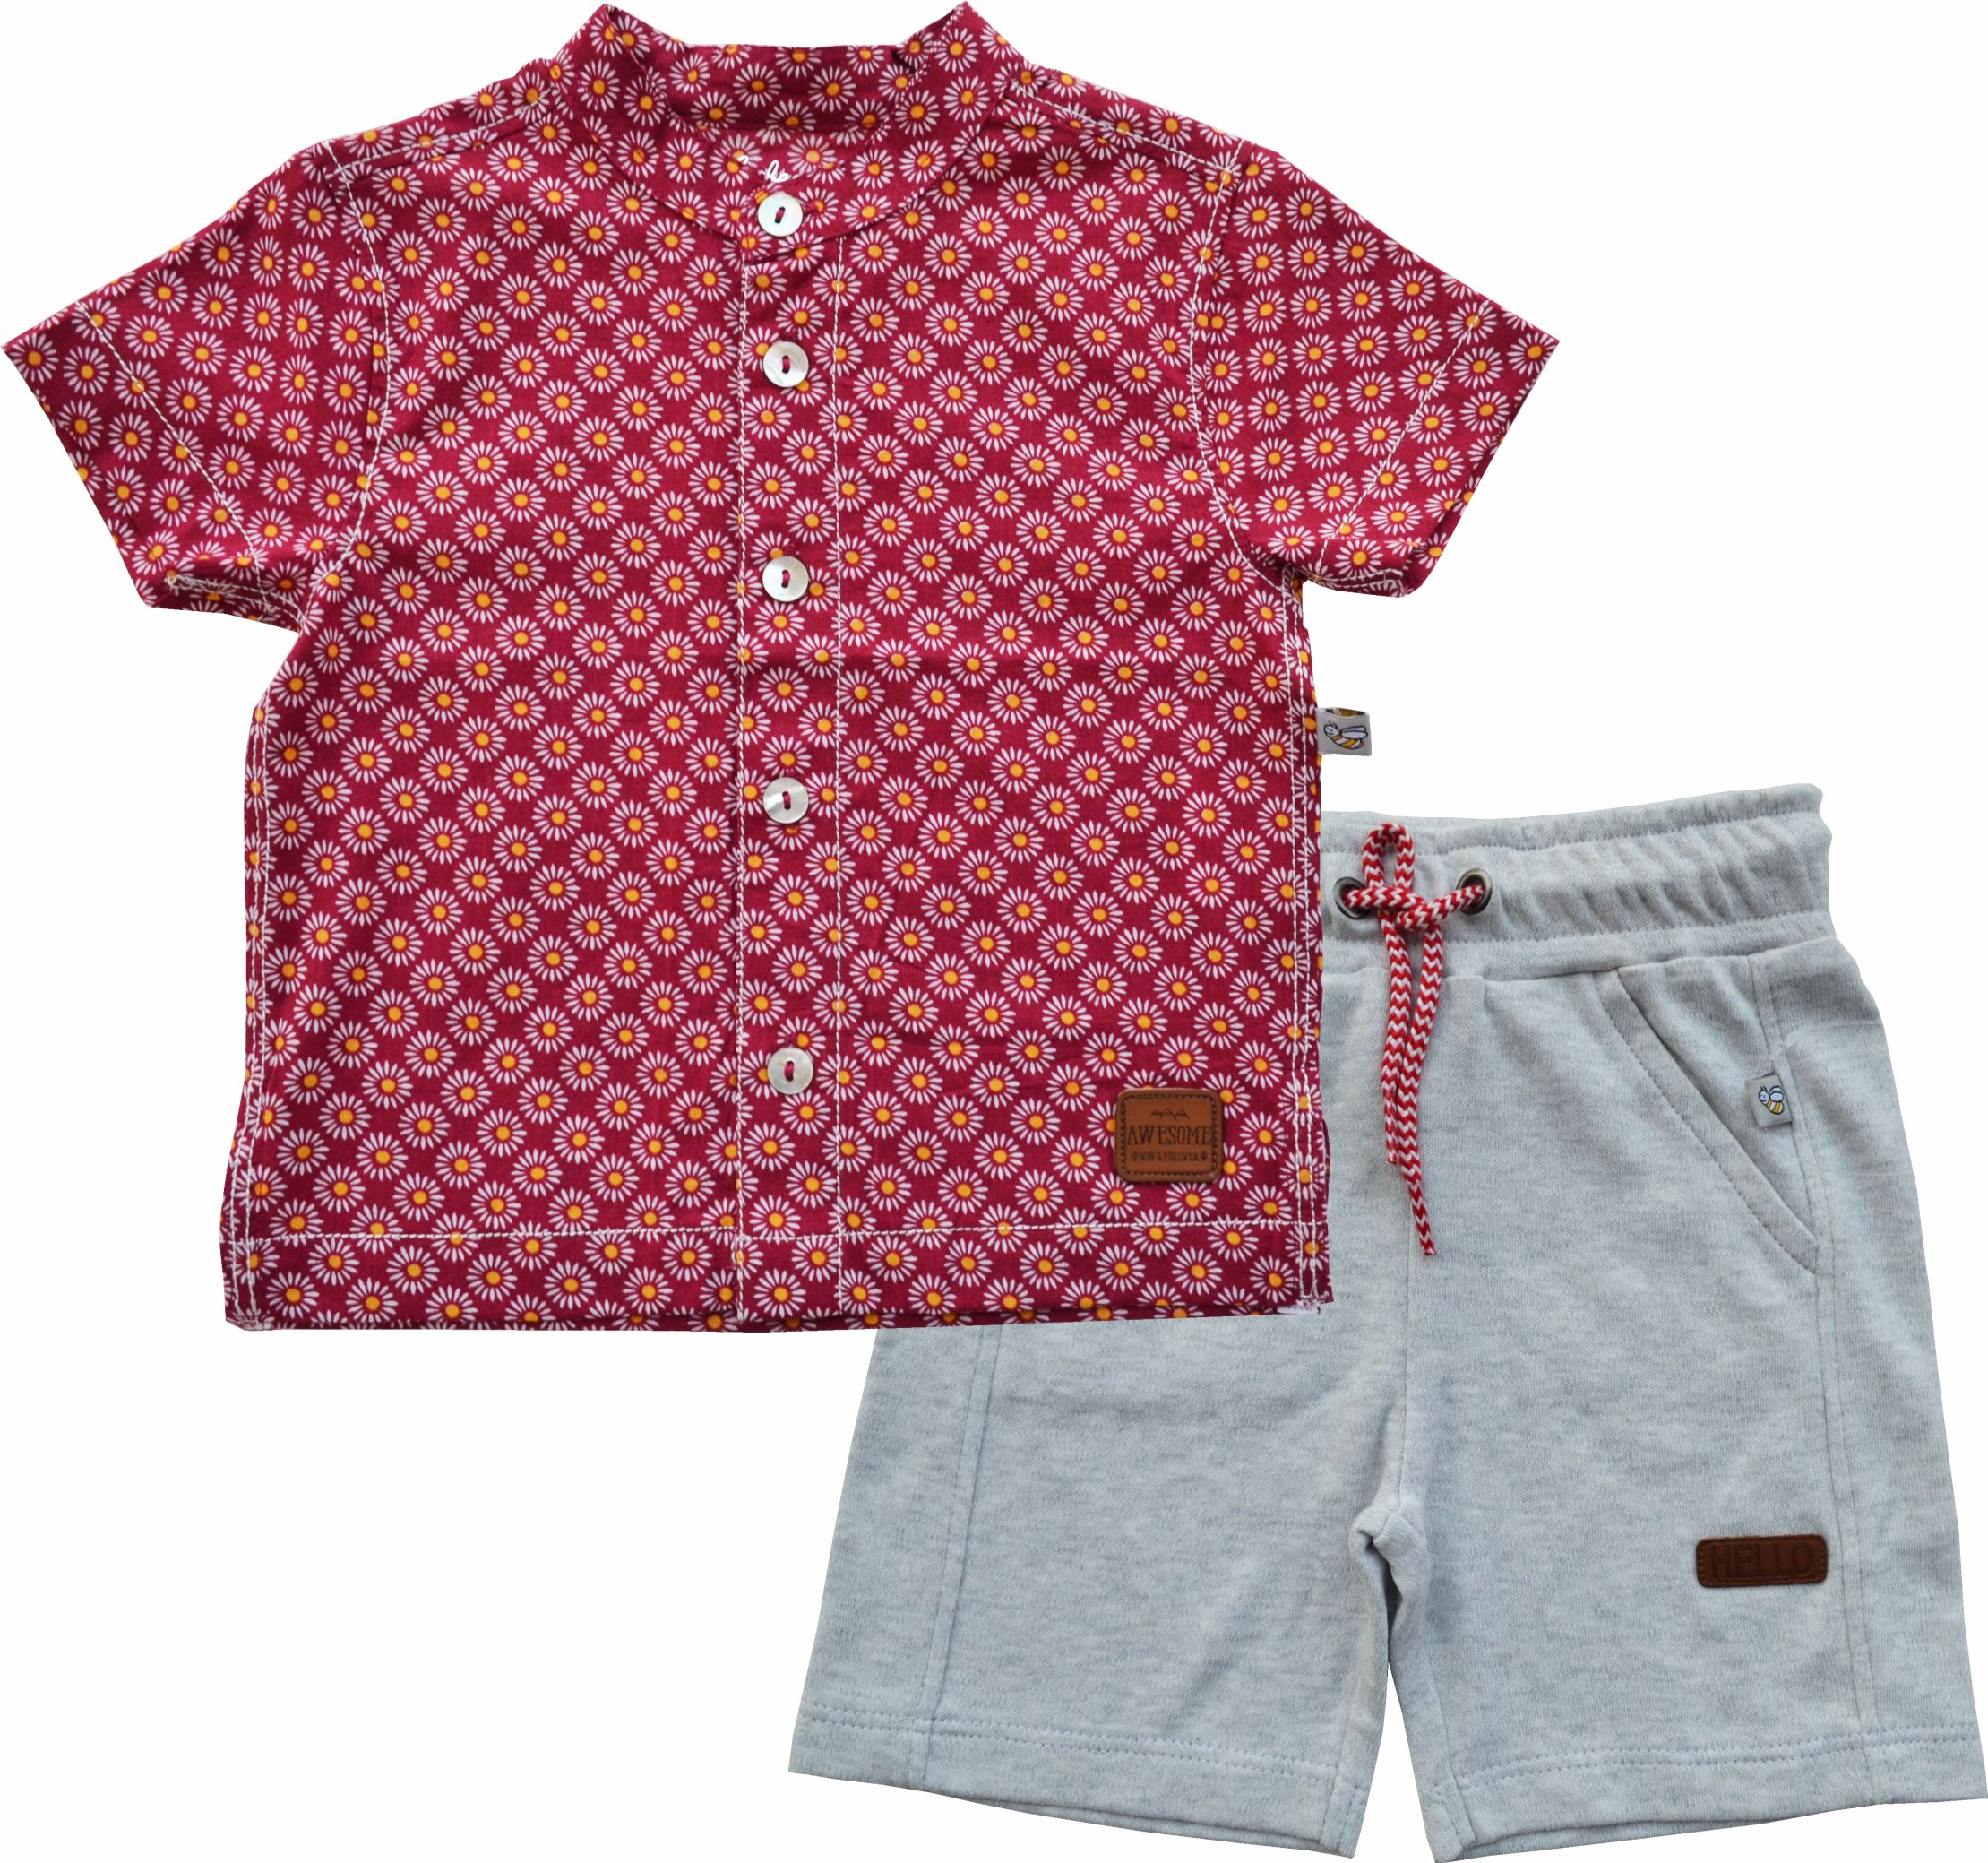 Allover Circles Print Red Short Sleeves Kurta Shirt + Grey Short set (100% Cotton)